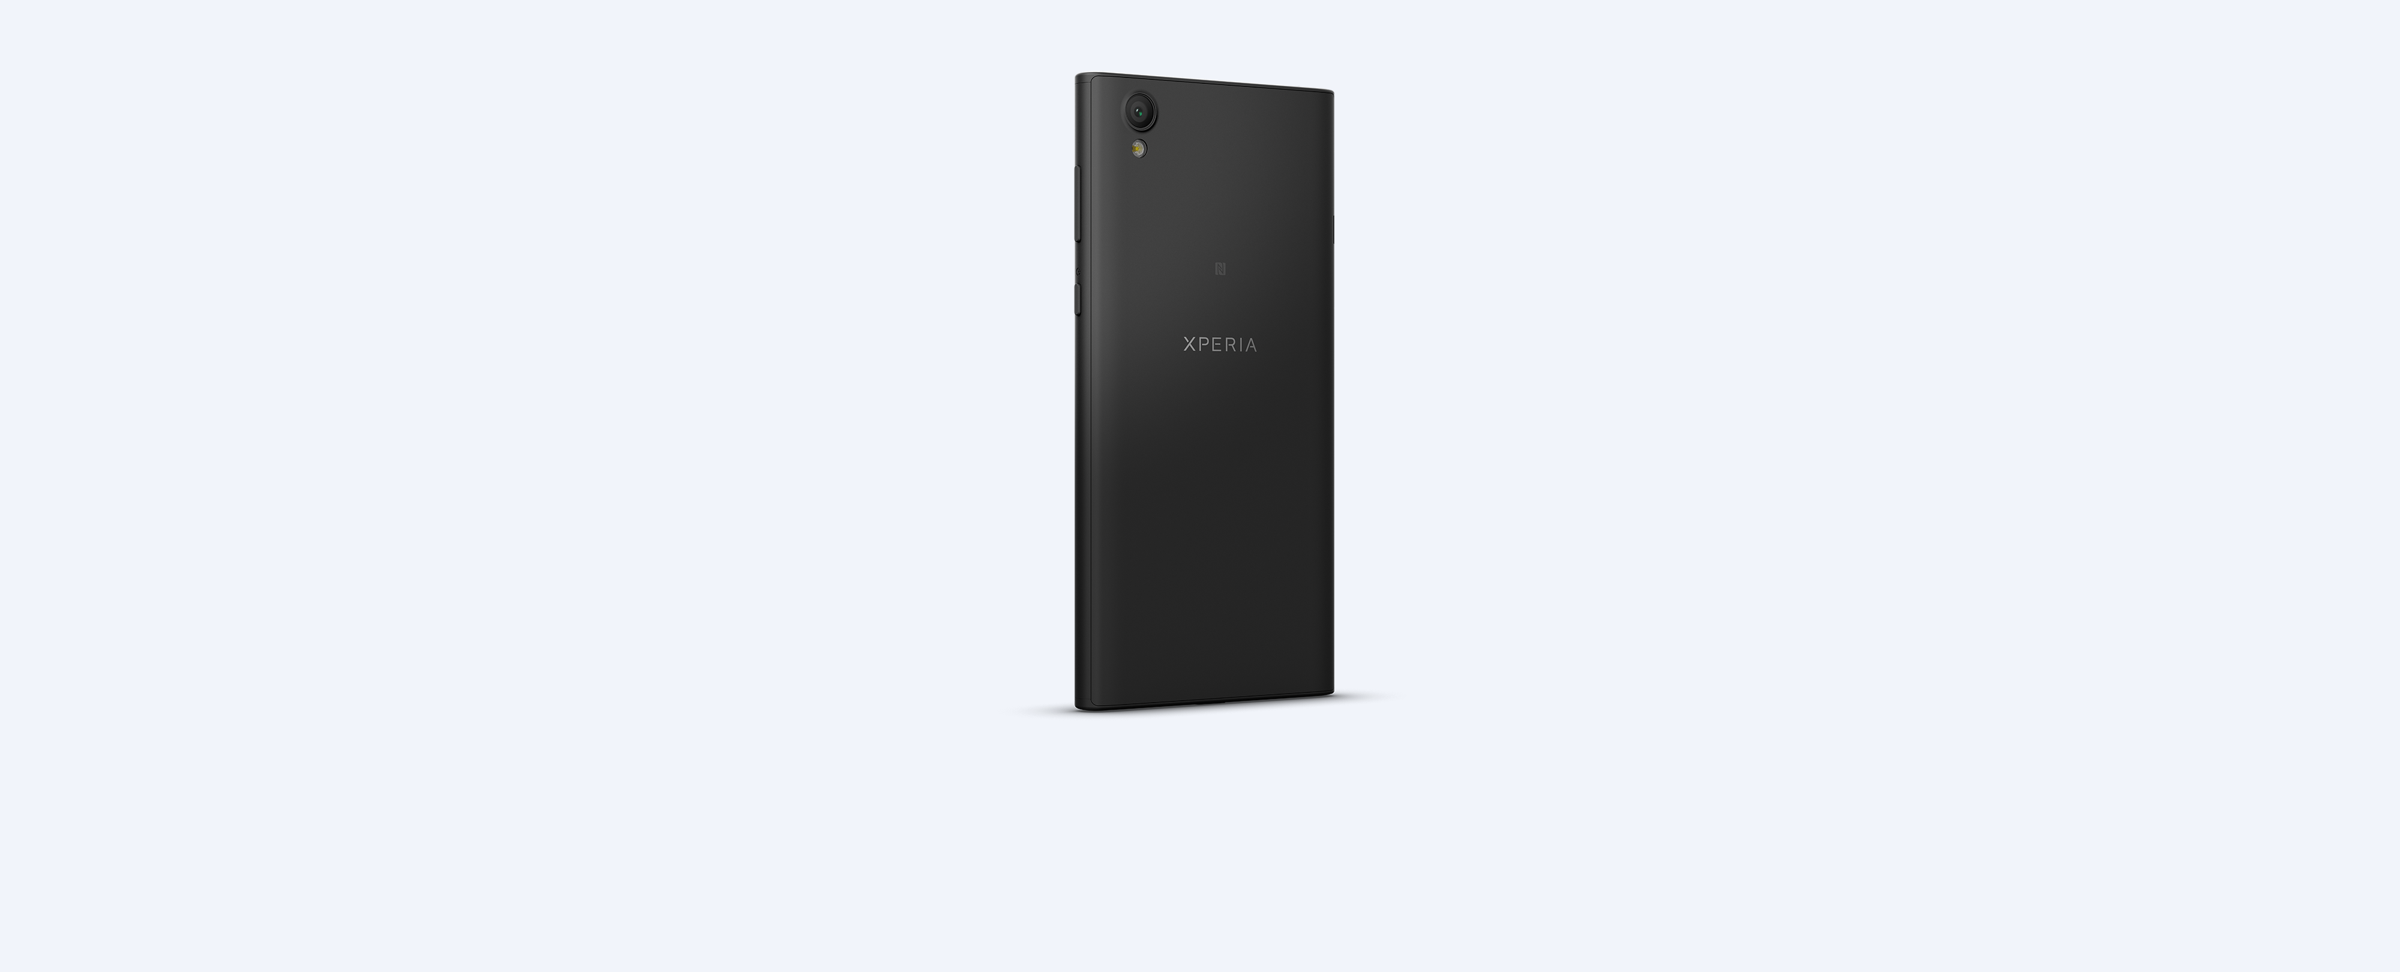  مواصفات هاتف سوني الجديد Sony Xperia L1 | بوابة الموبايلات